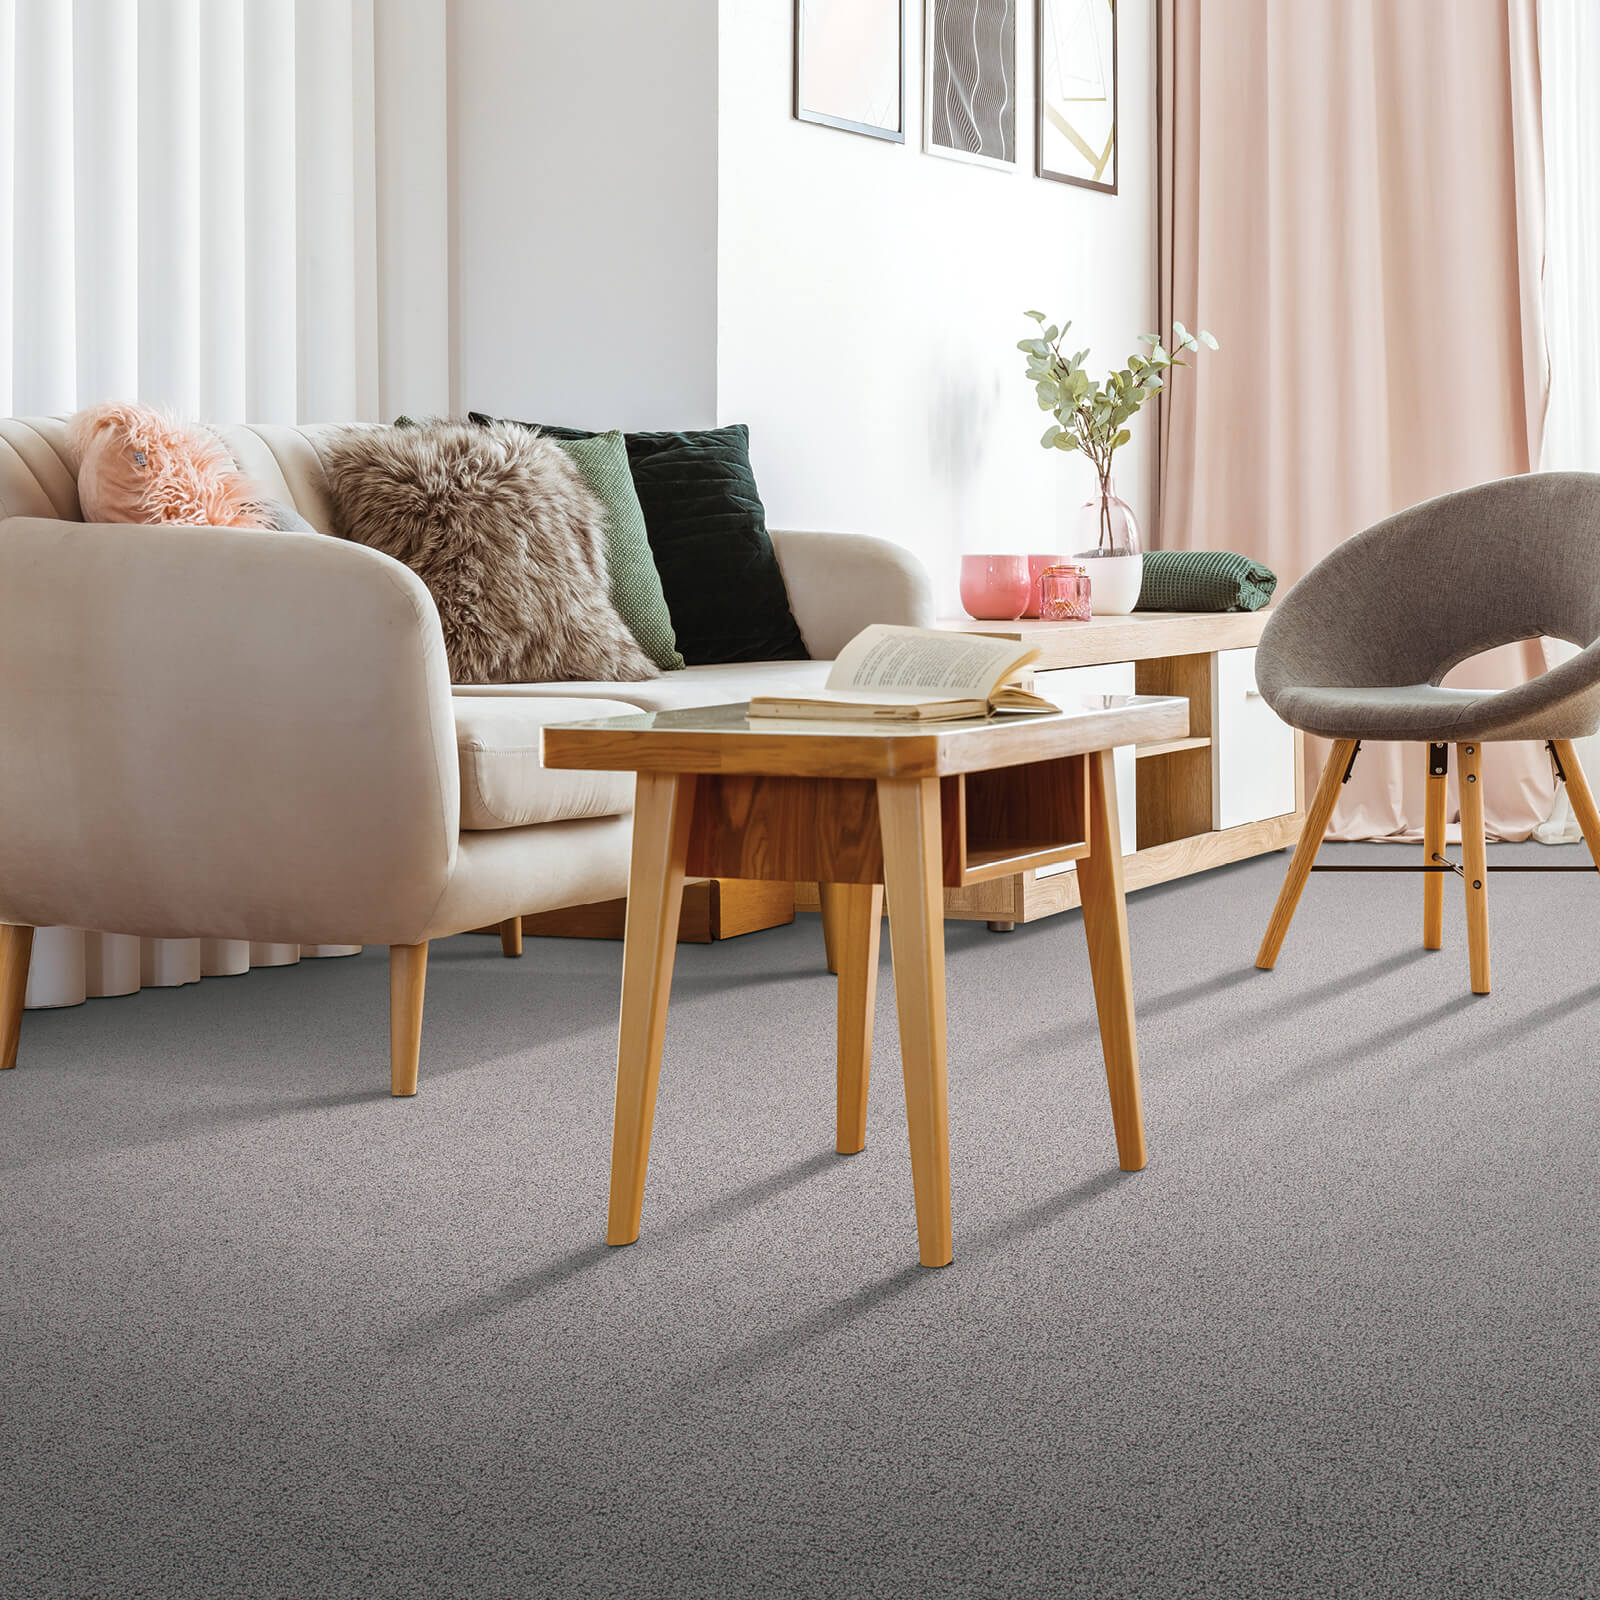 Carpet Flooring | Dolphin Carpet & Tile